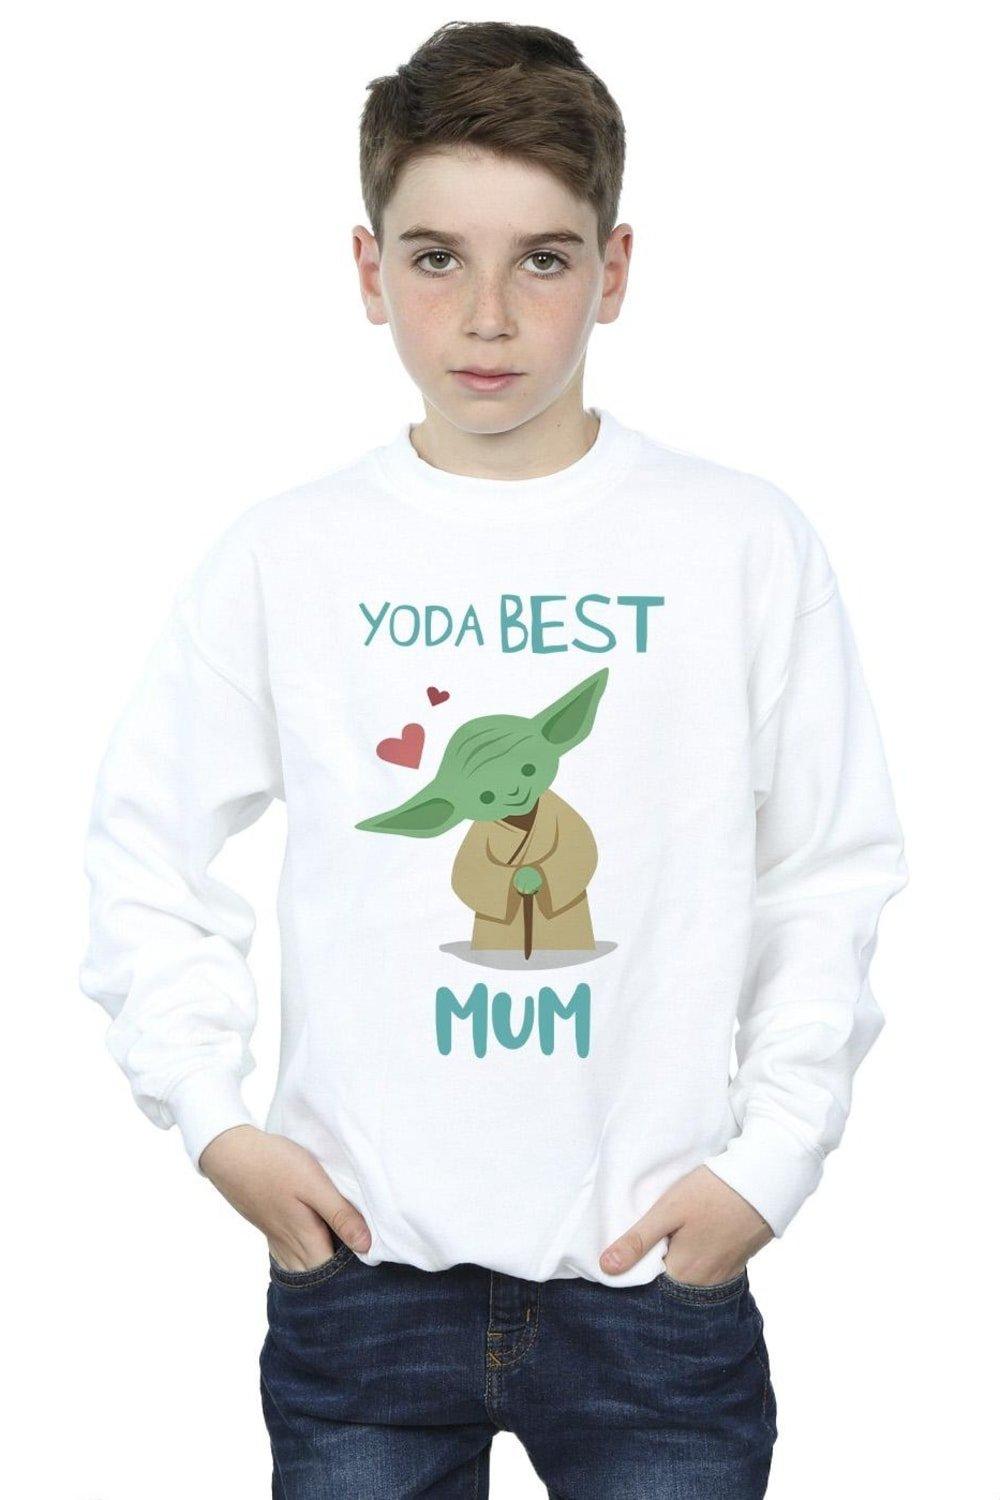 Yoda Best Mum Sweatshirt